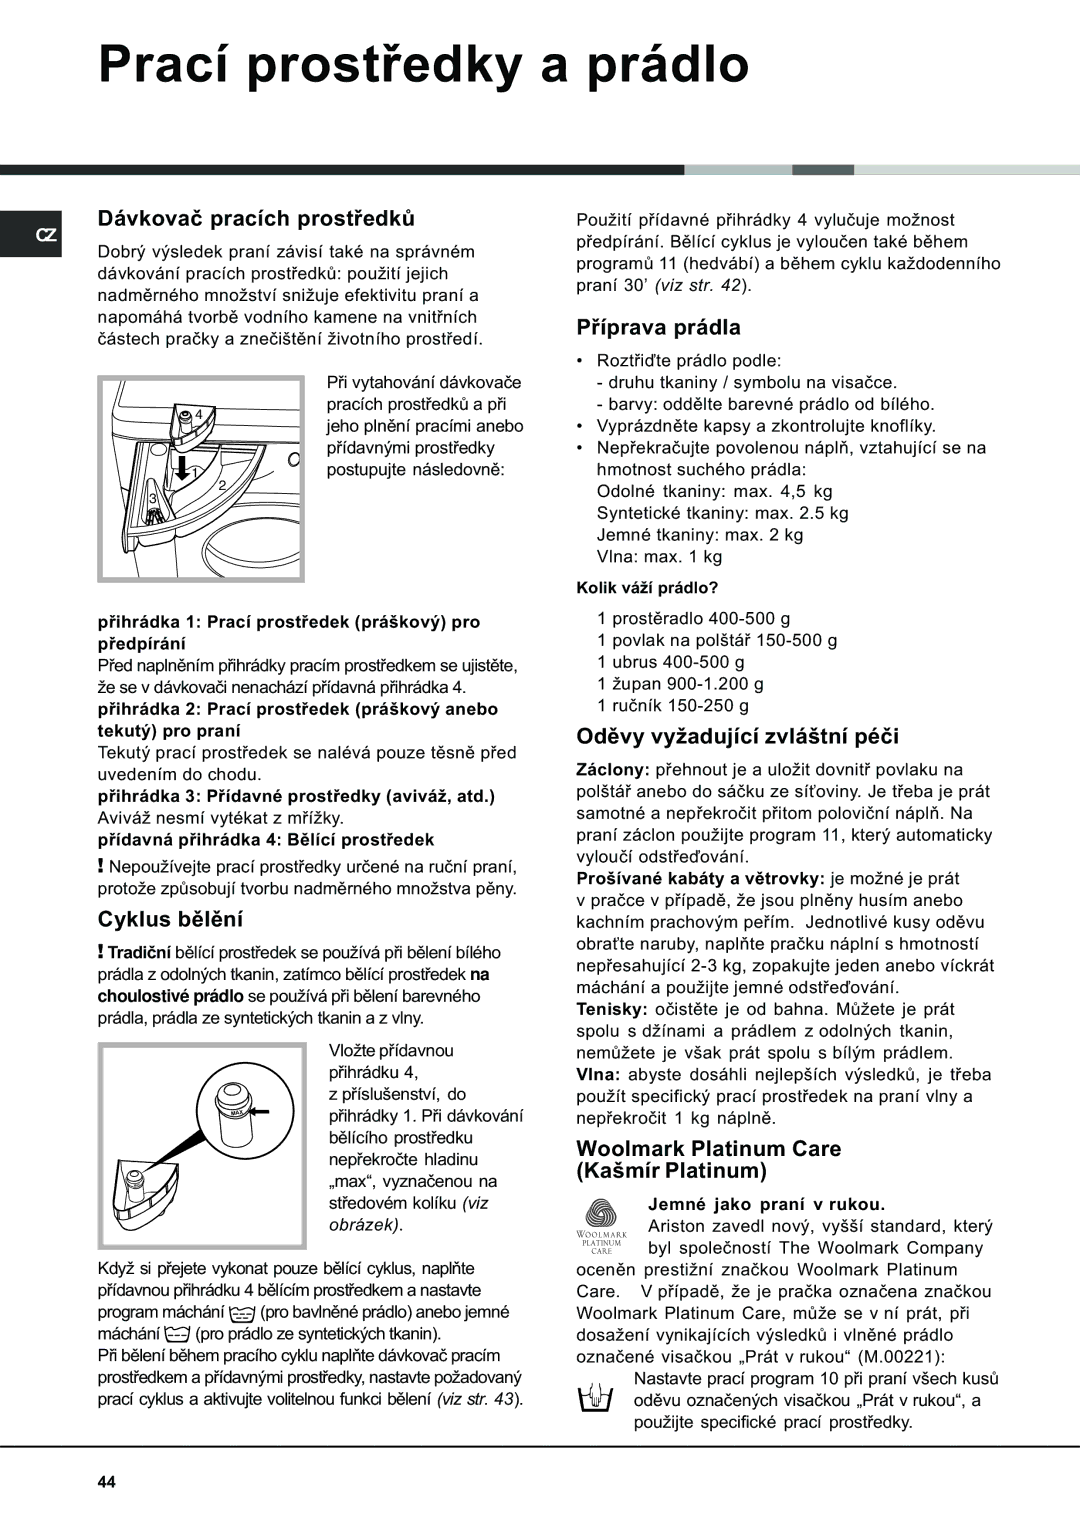 Ariston AVSD 109 manual Prací prostøedky a prádlo 